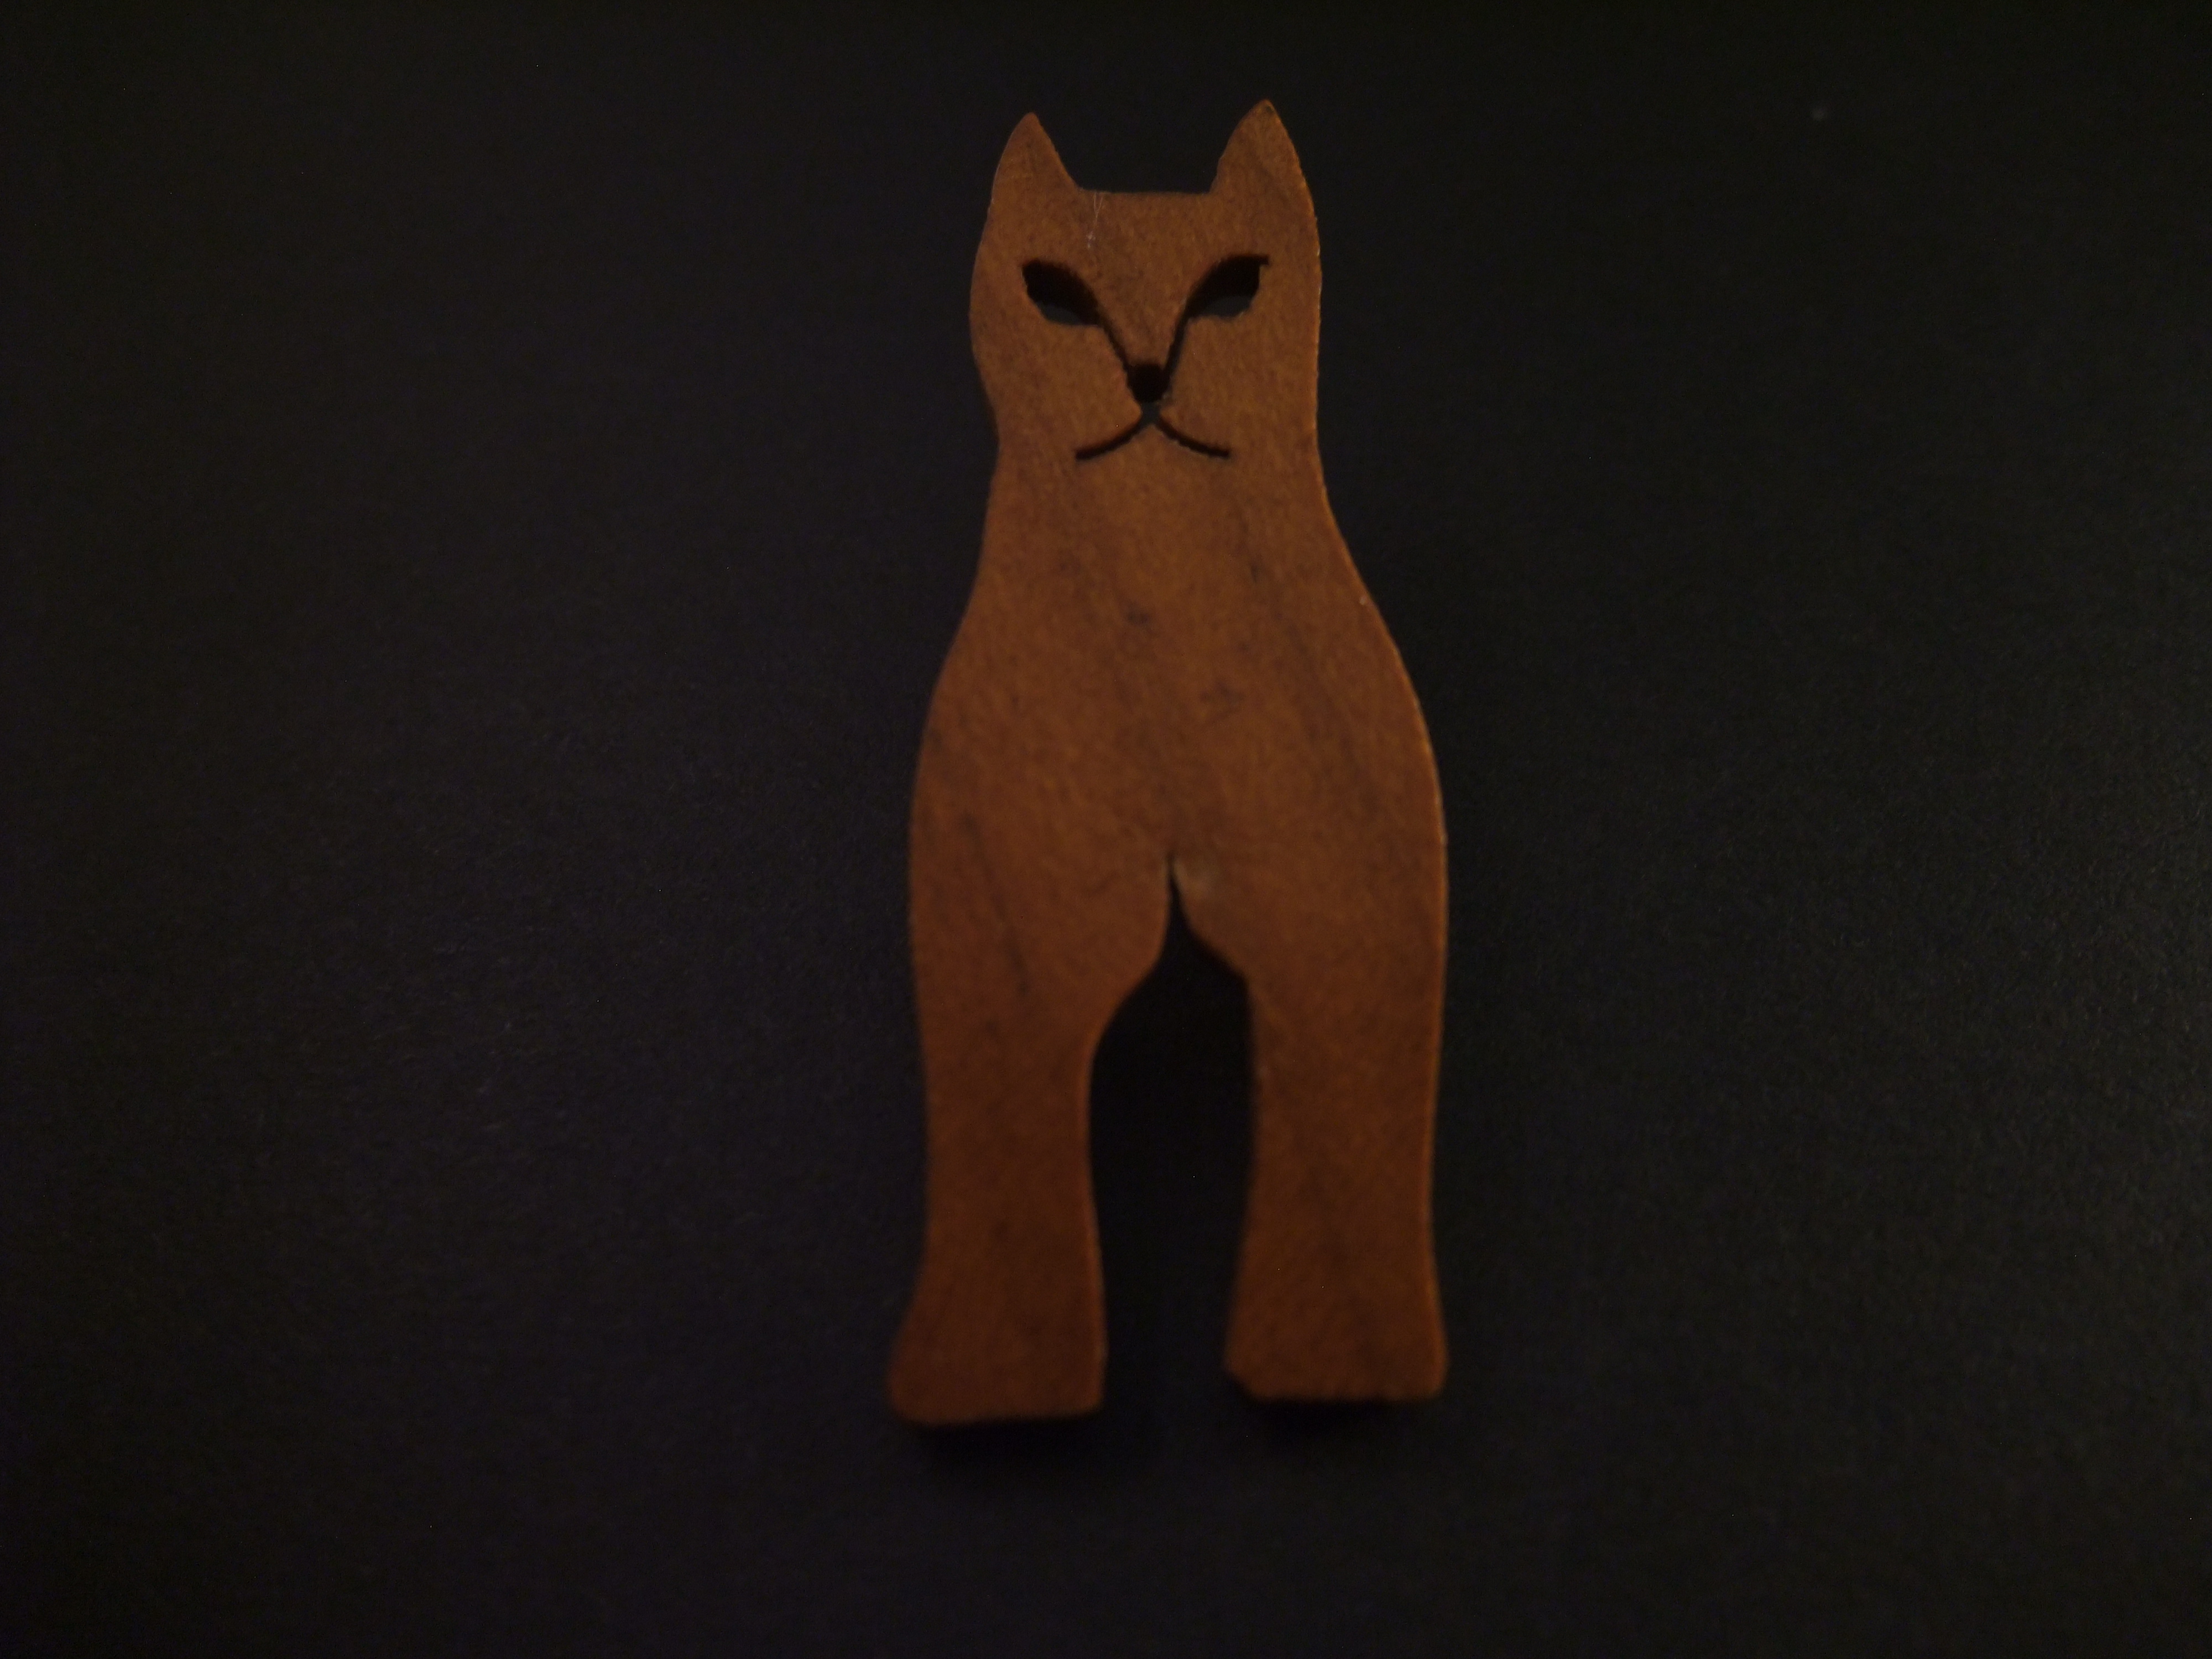 Poes-kat houten uitvoering